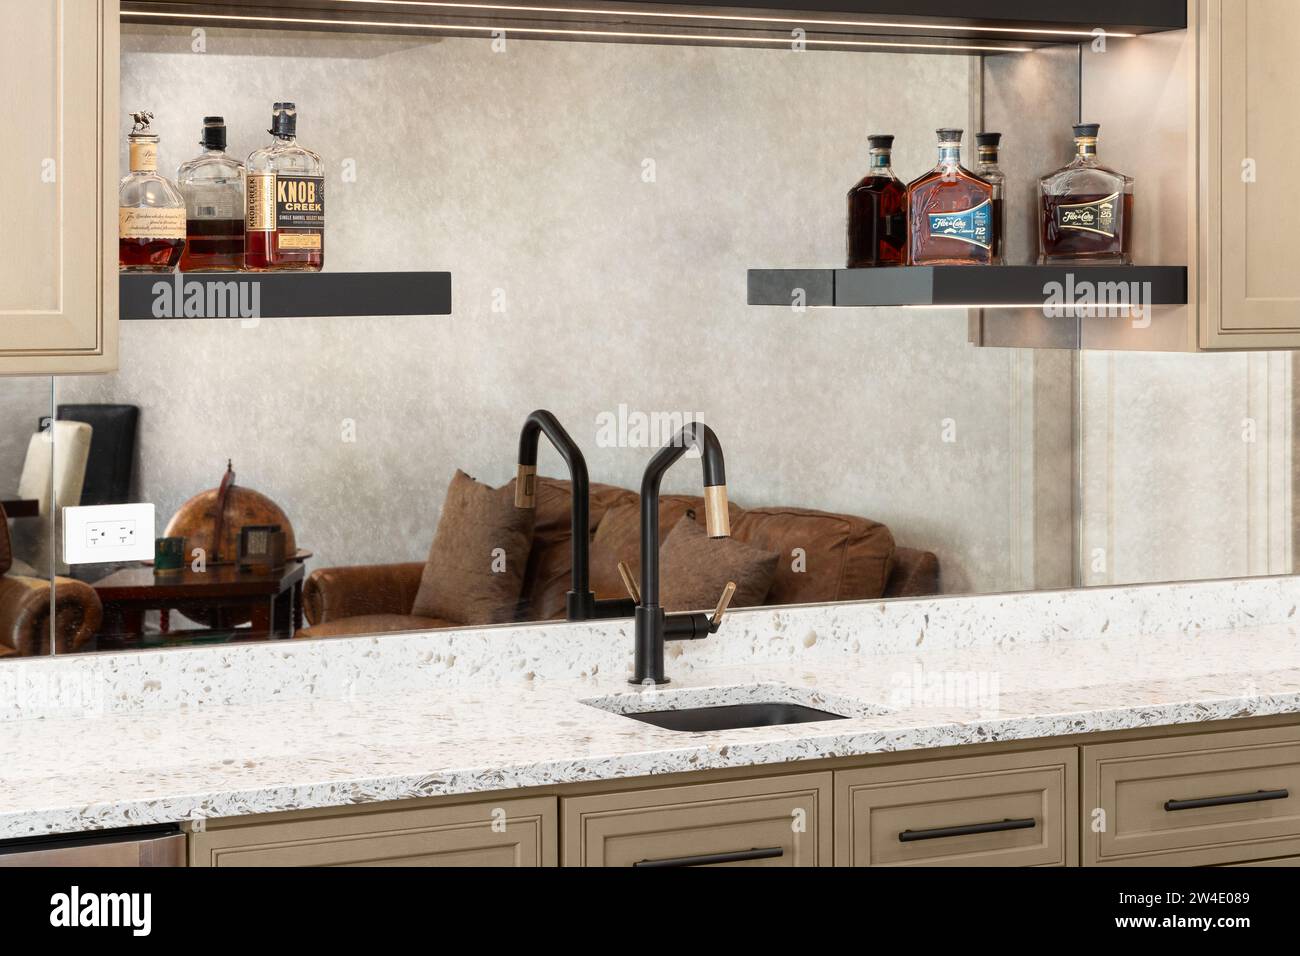 Un détail de robinet de bar humide avec des armoires brunes, un comptoir en quartz blanc, des bouteilles de whisky sur des étagères et un robinet noir et or. Banque D'Images